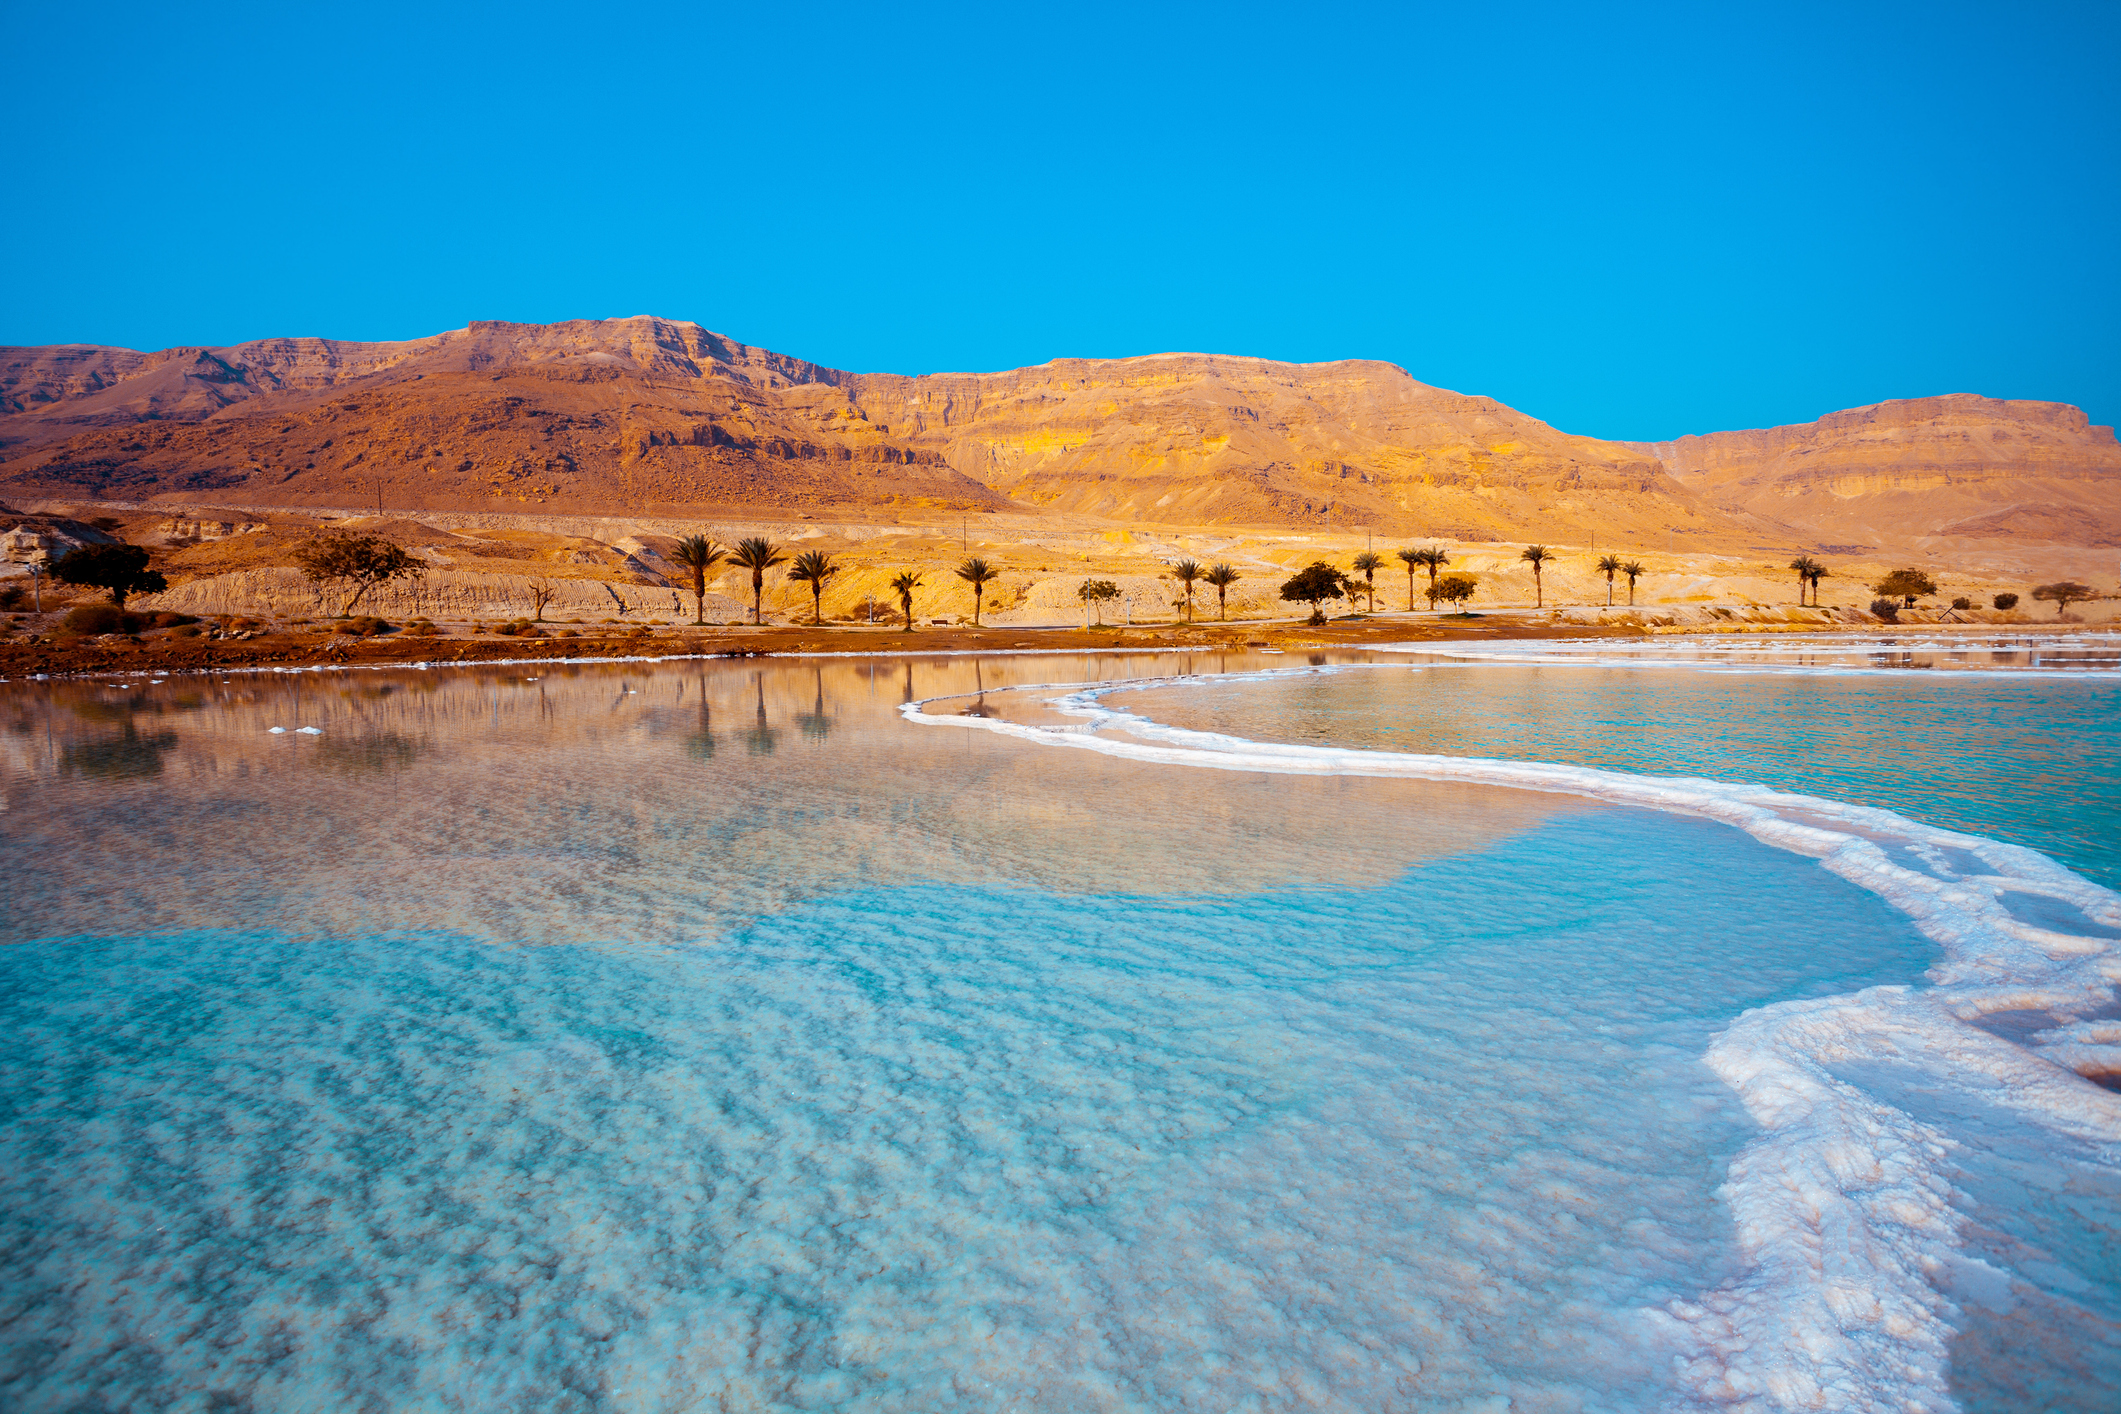 <p><strong>Мъртво море умира</strong></p>

<p>Мъртво море е най-дълбоката достъпна точка на Земята: 420 метра под морското равнище. То е известно със своите лечебни свойства от хилядолетия. Но уникалното солено езеро бавно изсъхва. Добивът на питейна вода от вливането на Йордан от страна на Израел и Йордания води до спад в нивото на север с около един метър годишно. Канал към Червено море би помогнал, но това решение има не само привърженици.</p>